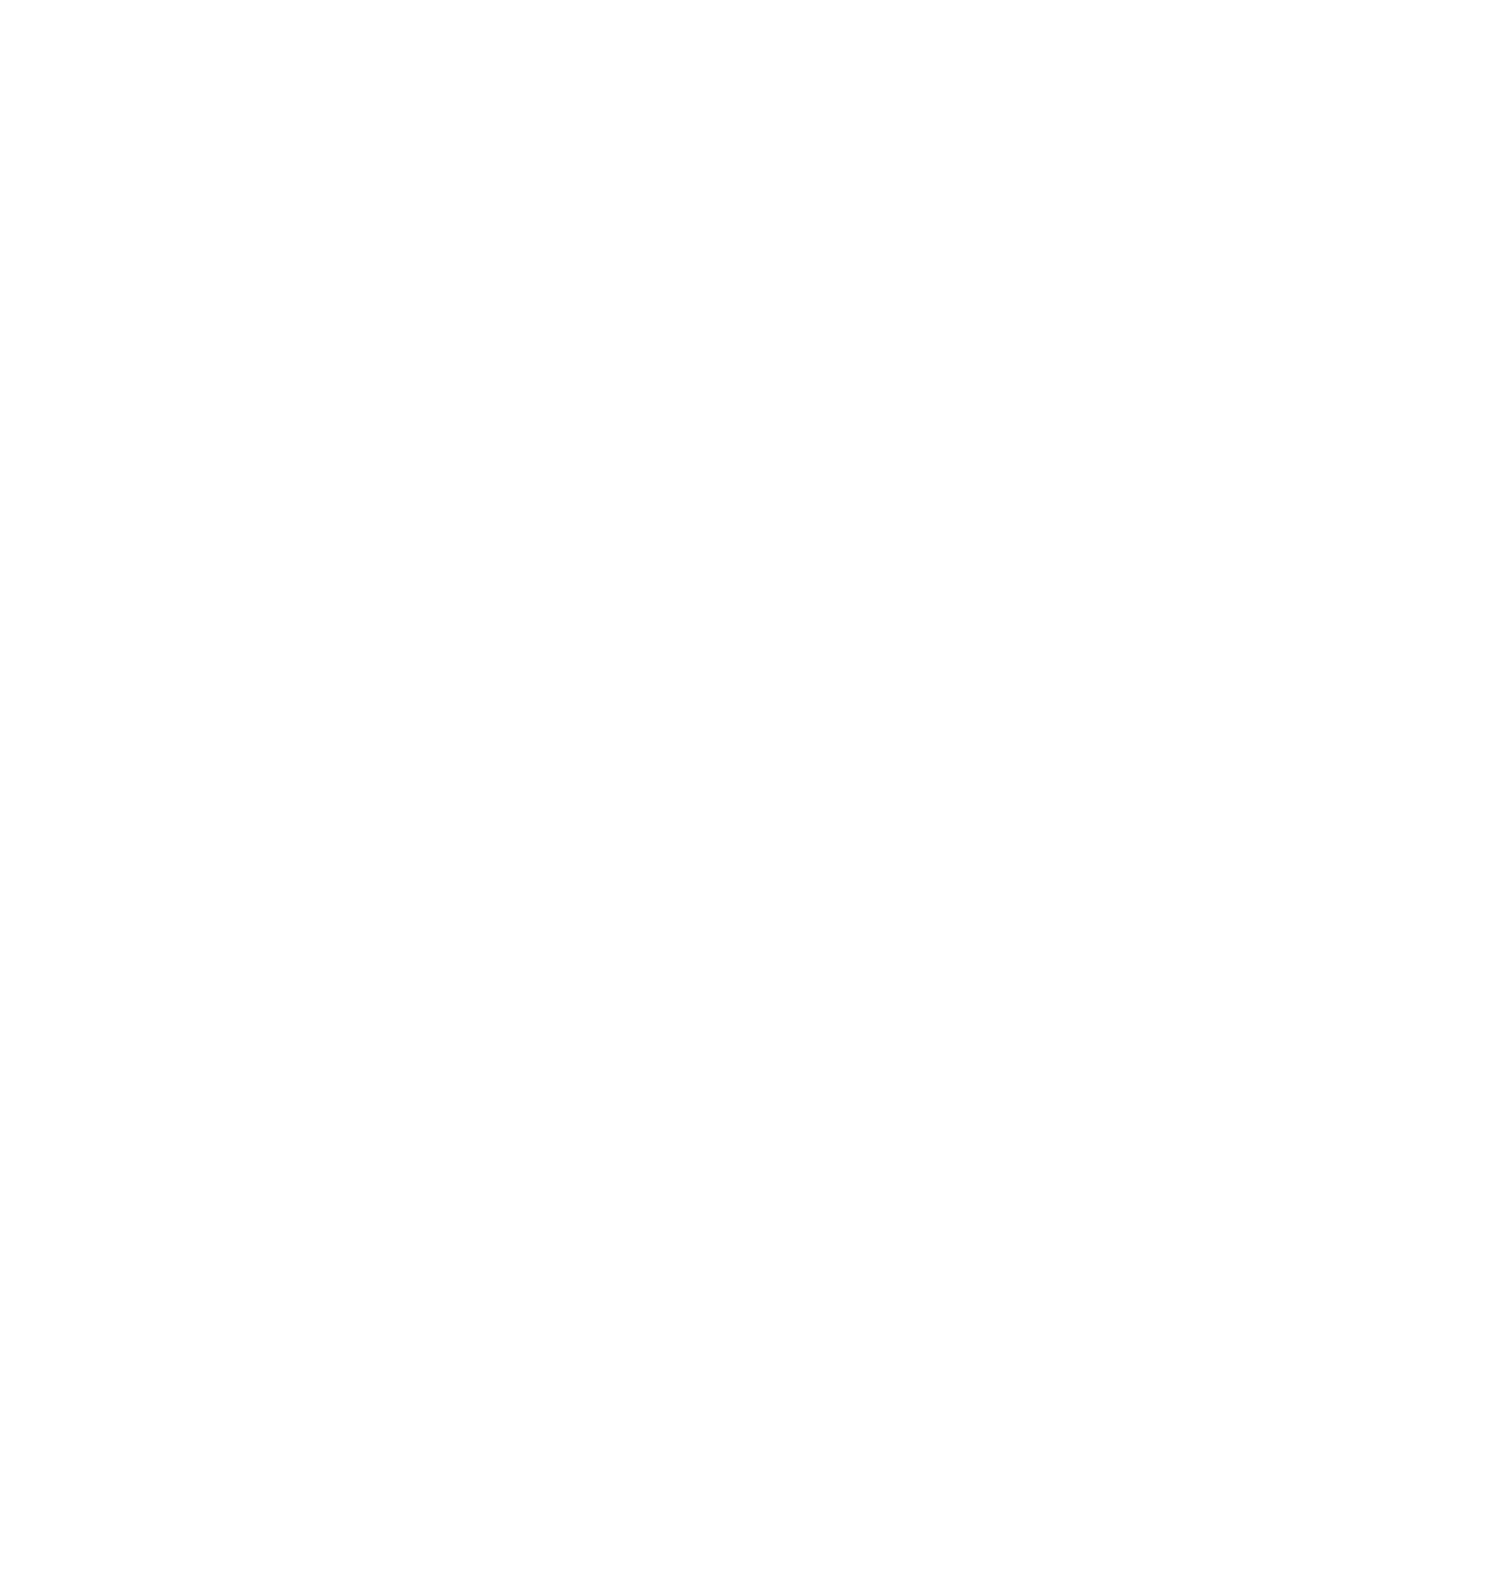 TOPAZ. Thrive.